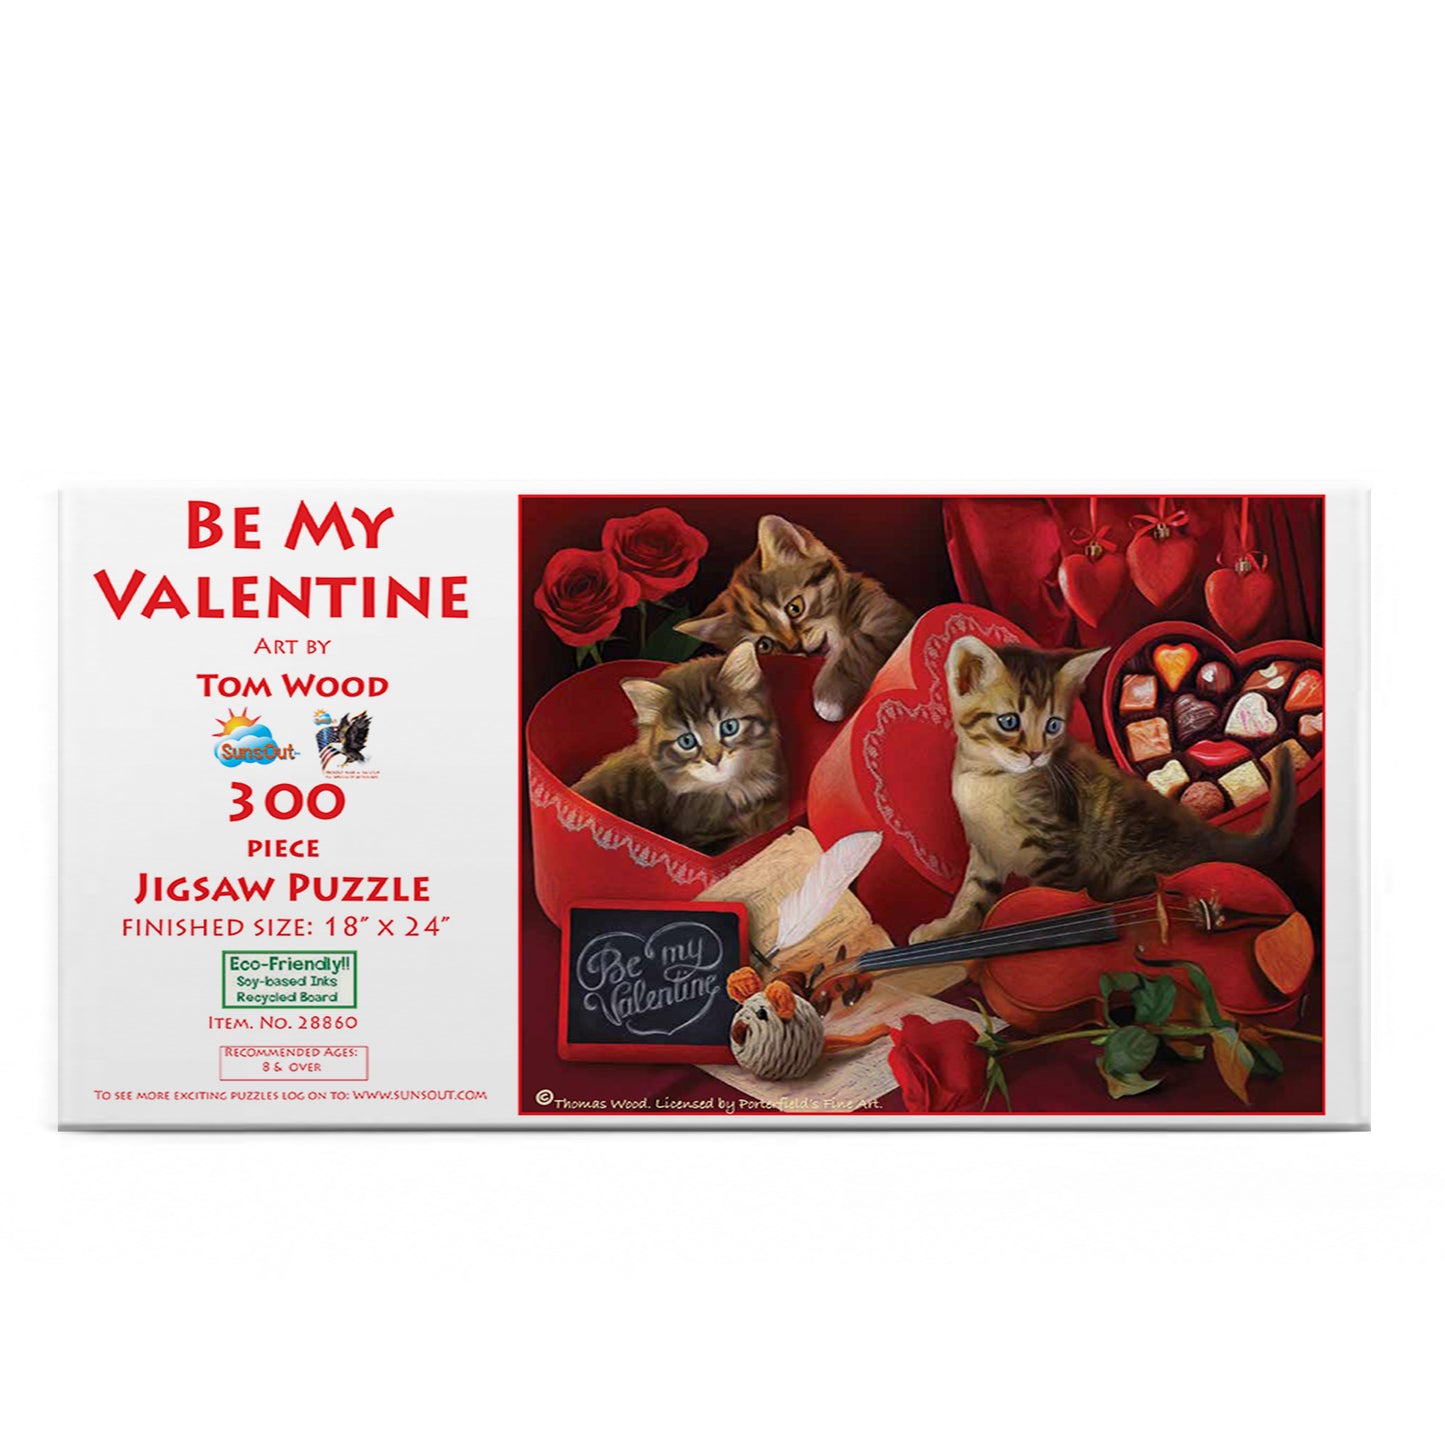 Be My Valentine - 300 Piece Jigsaw Puzzle